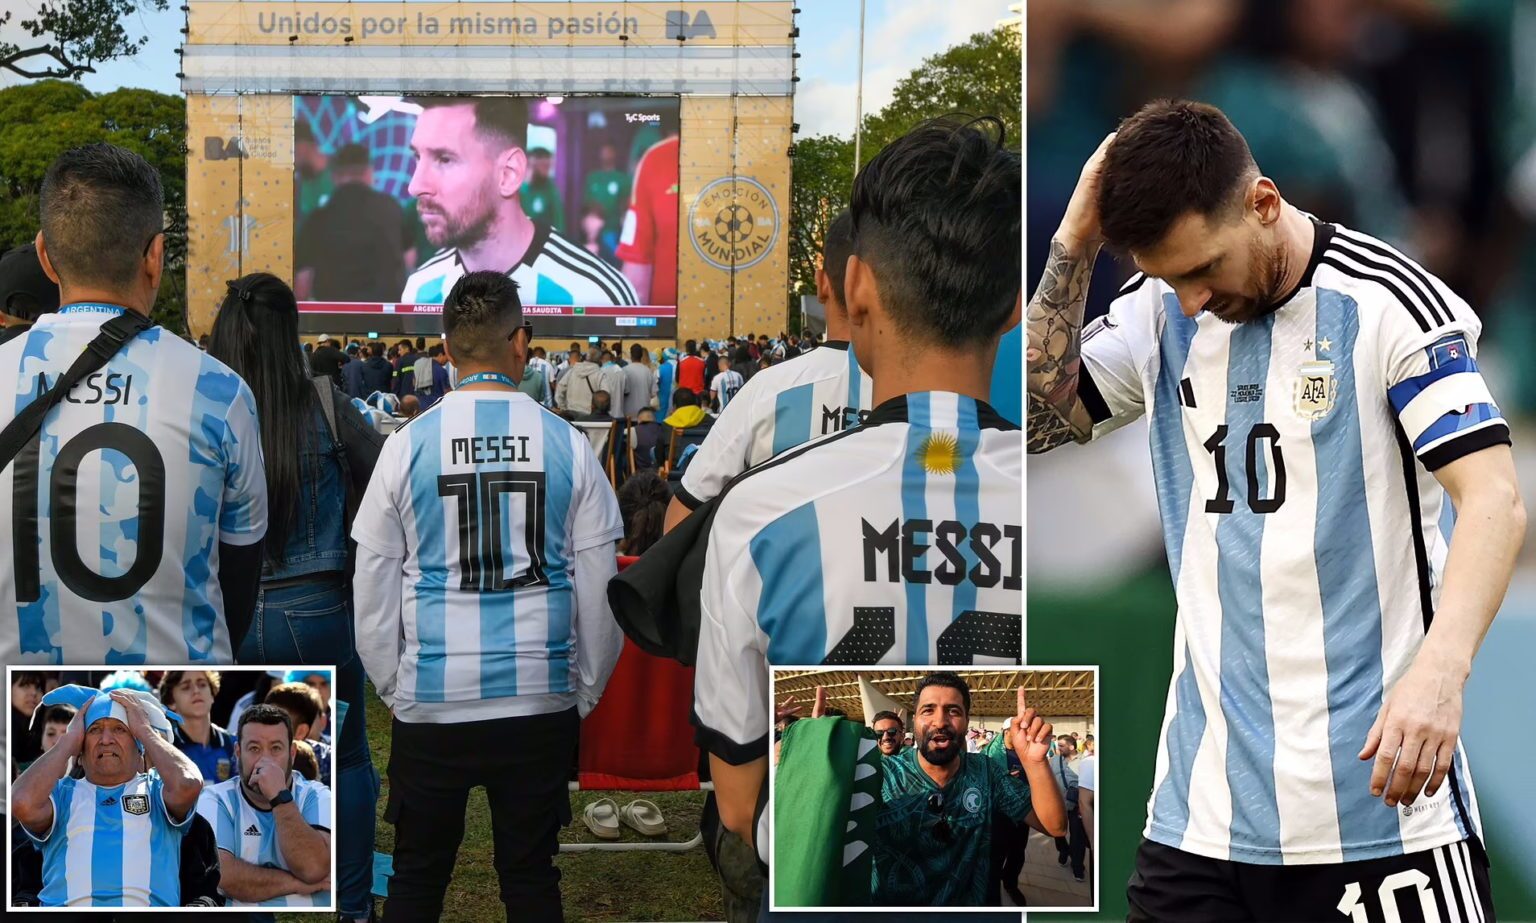 ۱۰ مورد از شوکه کننده ترین و عجیب ترین نتایج جام جهانی بعد از باخت آرژانتین به عربستان